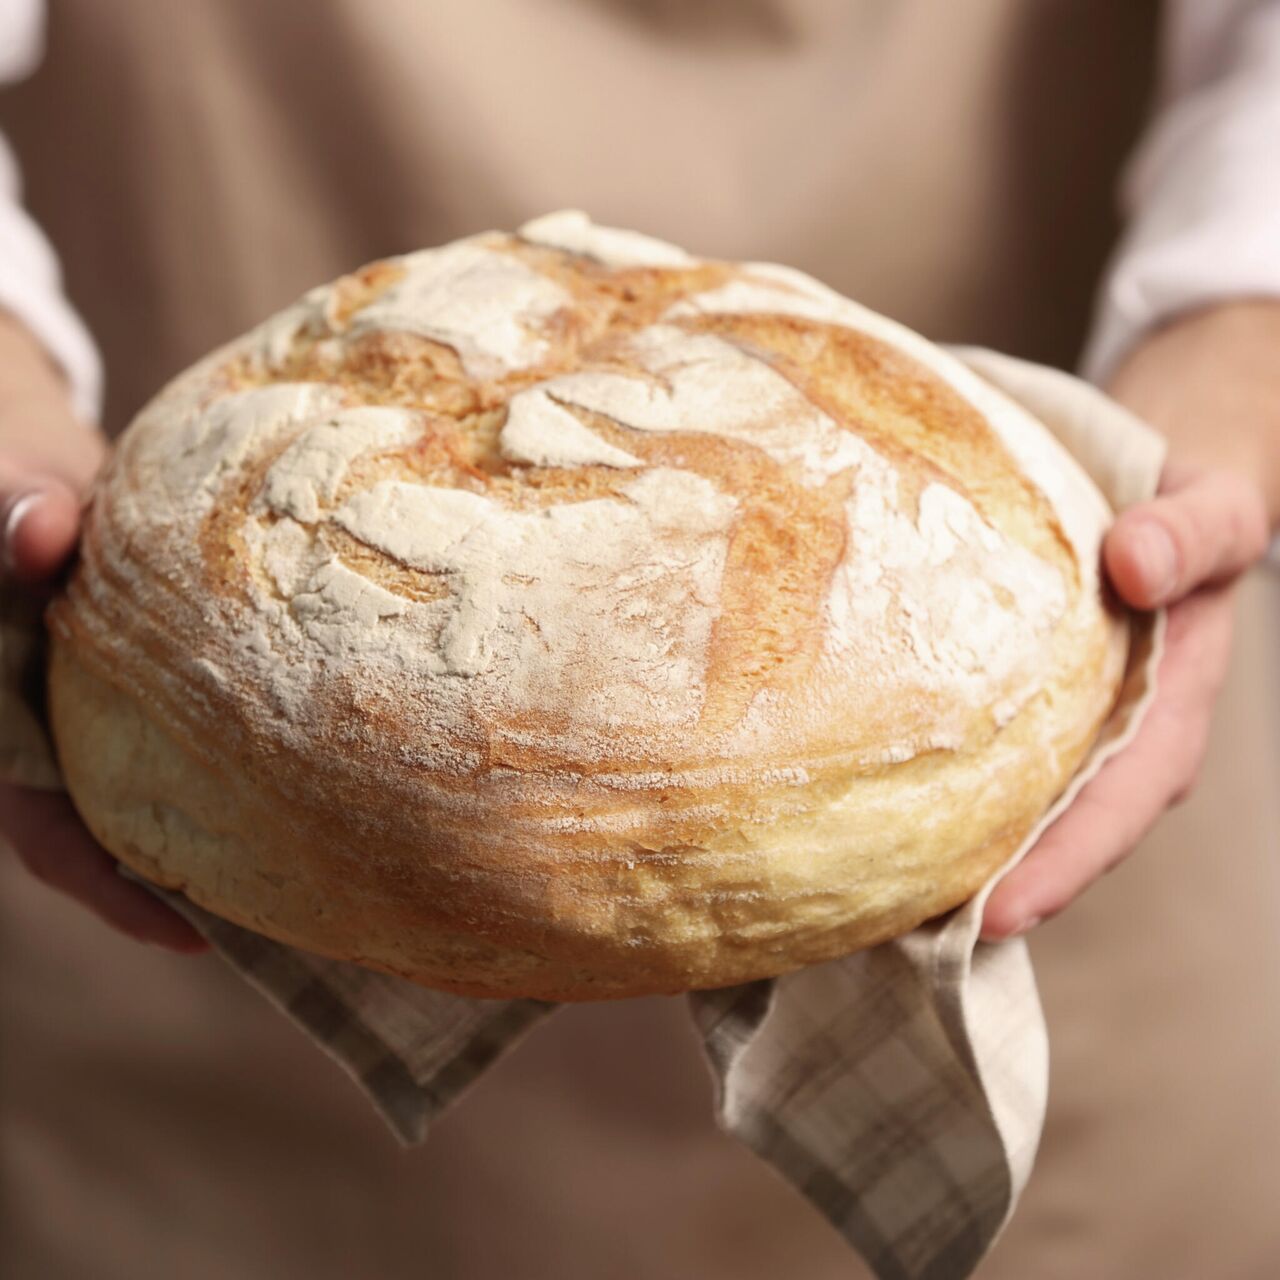 ​Хлеб в домашних условиях: способы приготовления в духовке и хлебопечке